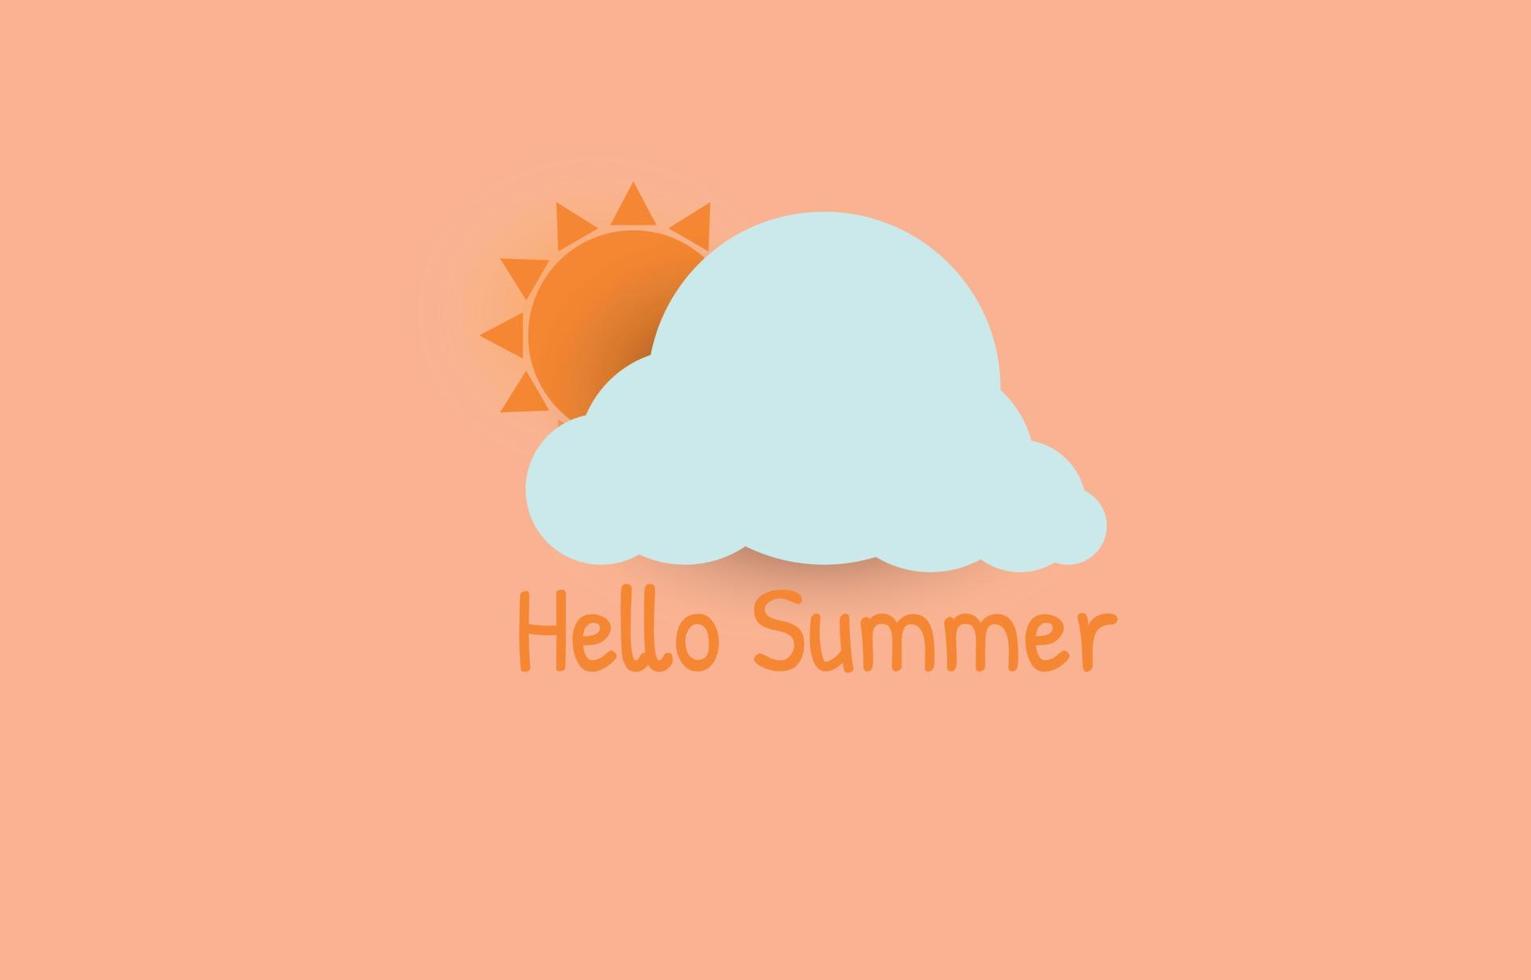 vektorillustration von sonne und wolke auf orange hintergrund und beschriftung hallo sommer, sommerhintergrundkonzept, minimalistischer stil. vektor